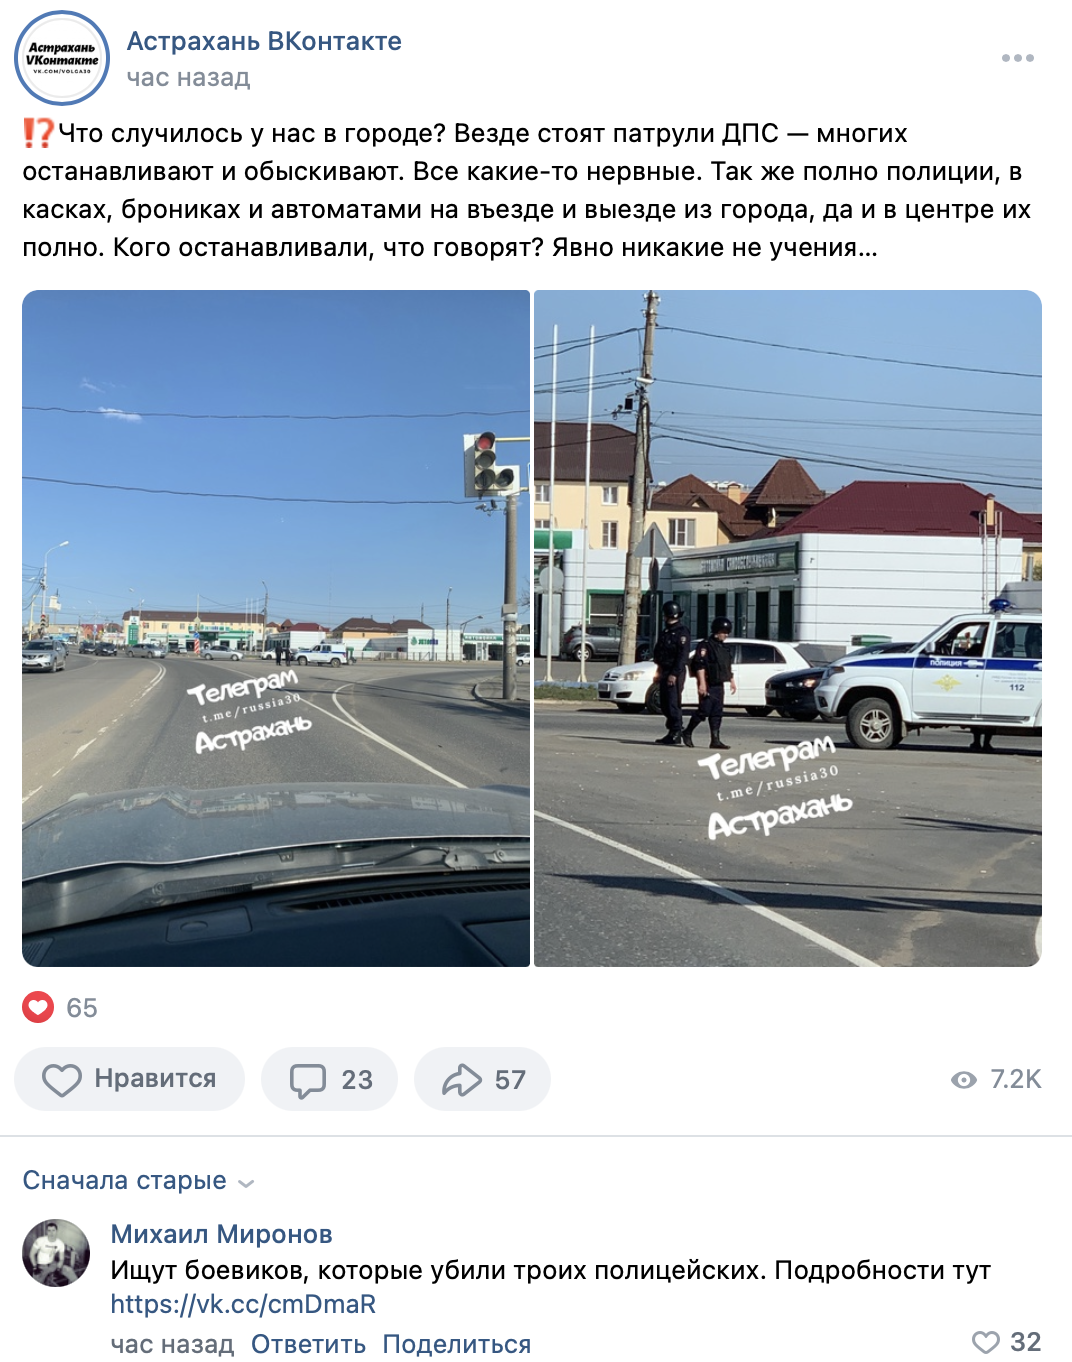 В Астрахани совершено вооруженное нападение на наряд полиции